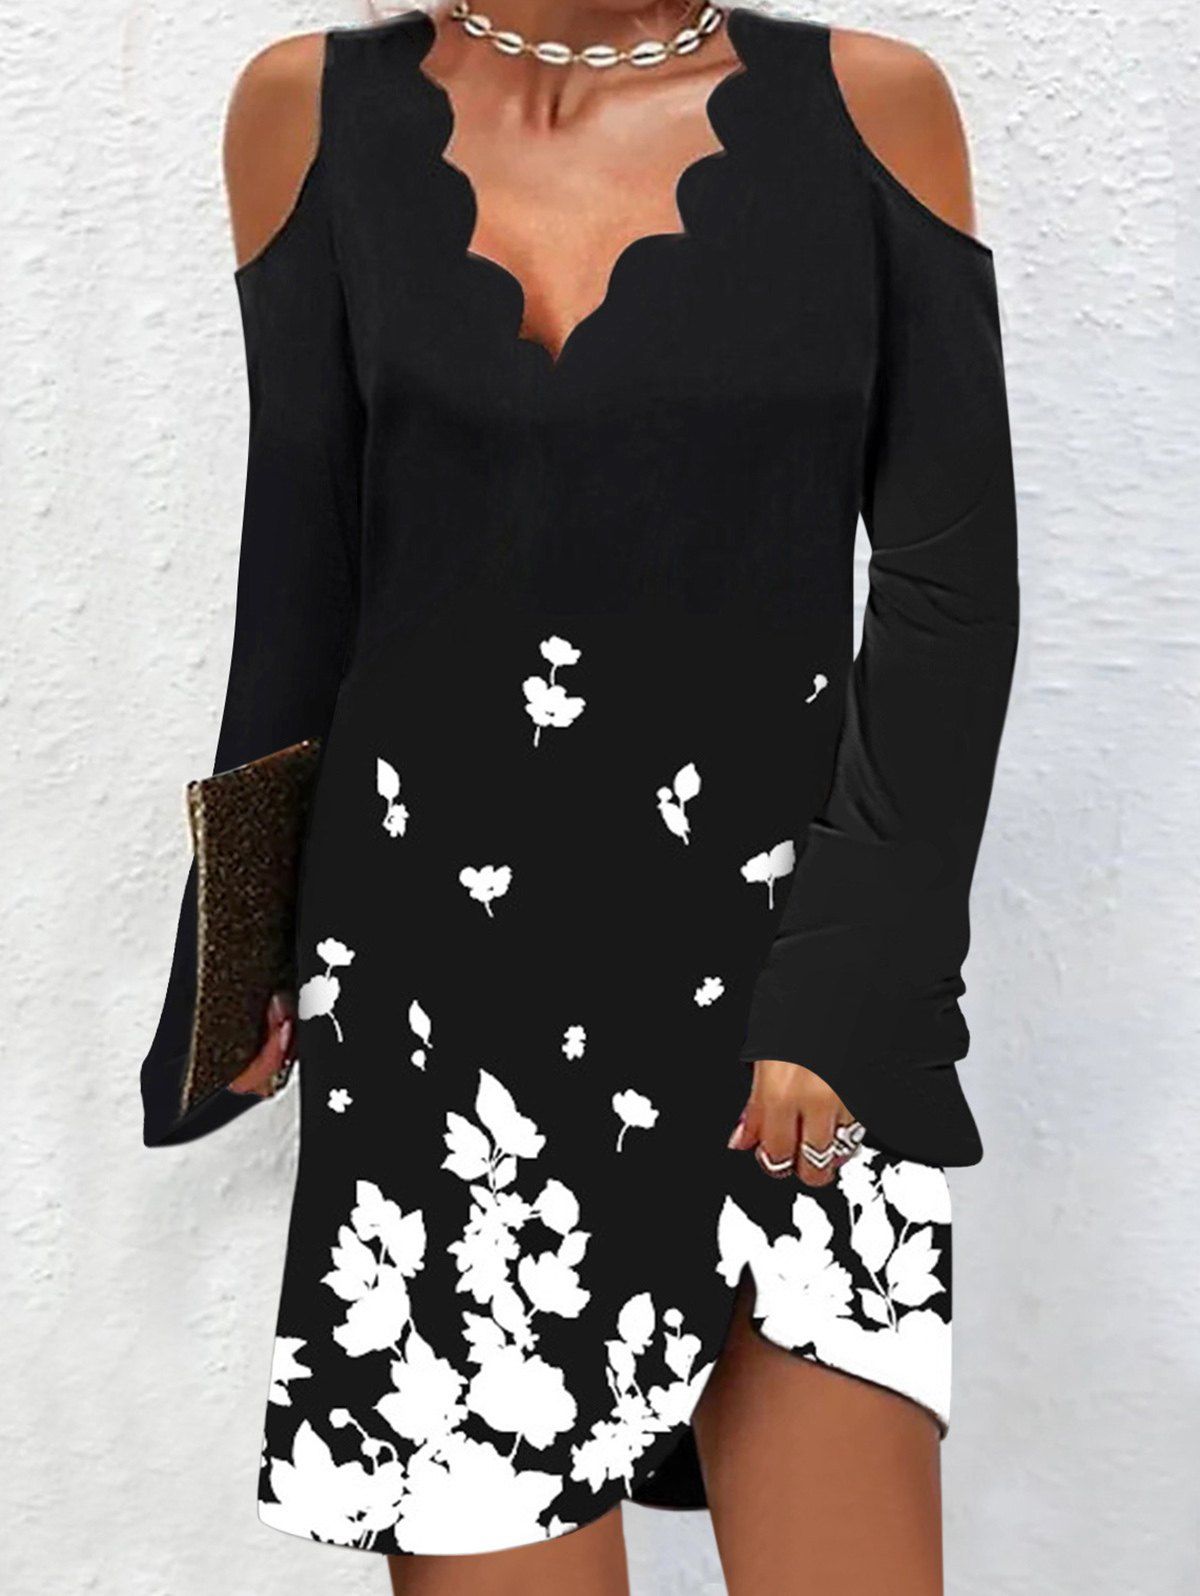 Contrast Floral Print Cold Shoulder Dress Scalloped V Neck Long Sleeve Mini Dress - BLACK 3XL